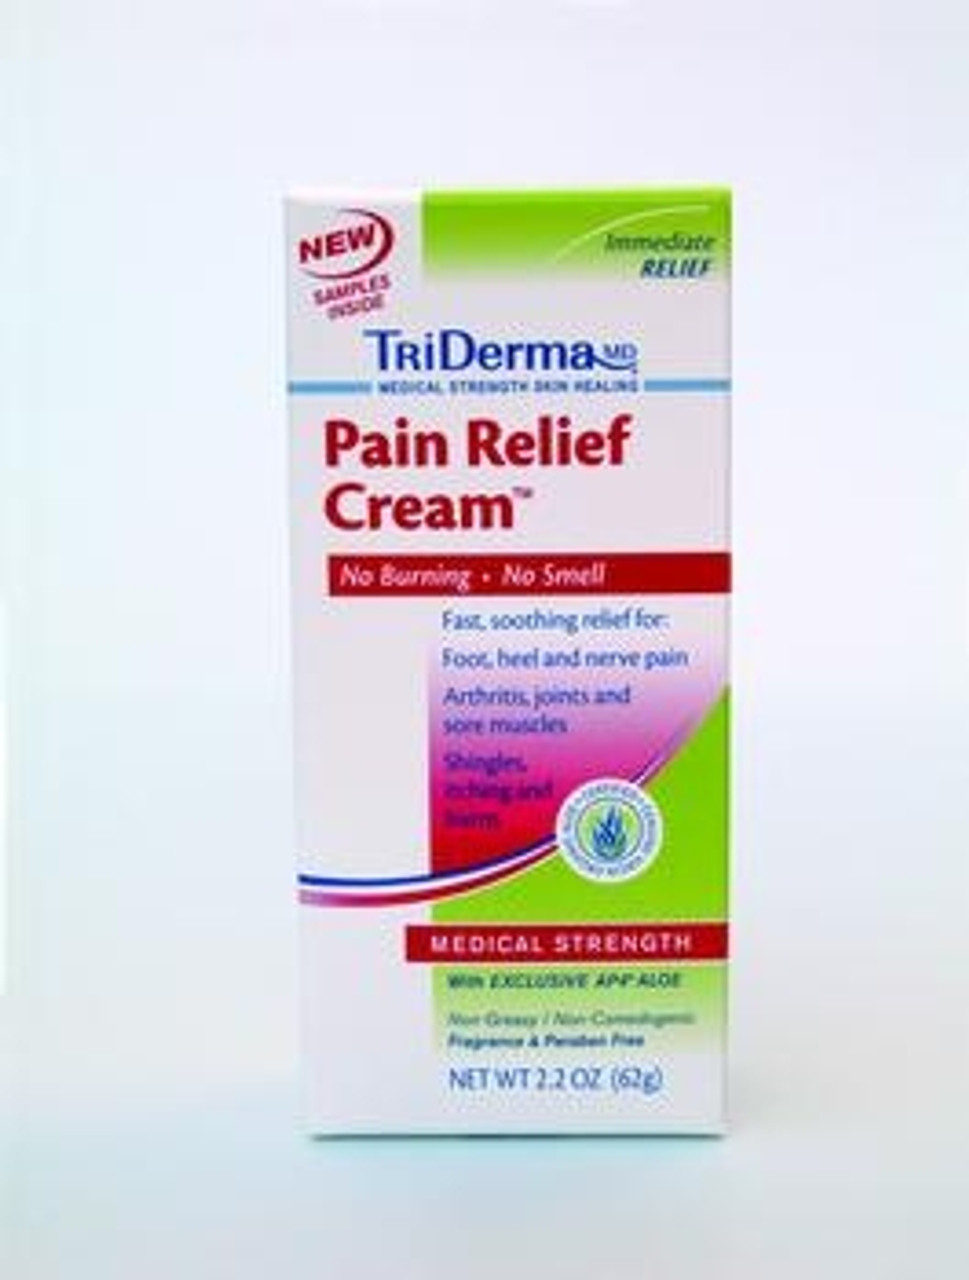 Triderma MD Pressure Sore Relief Cream